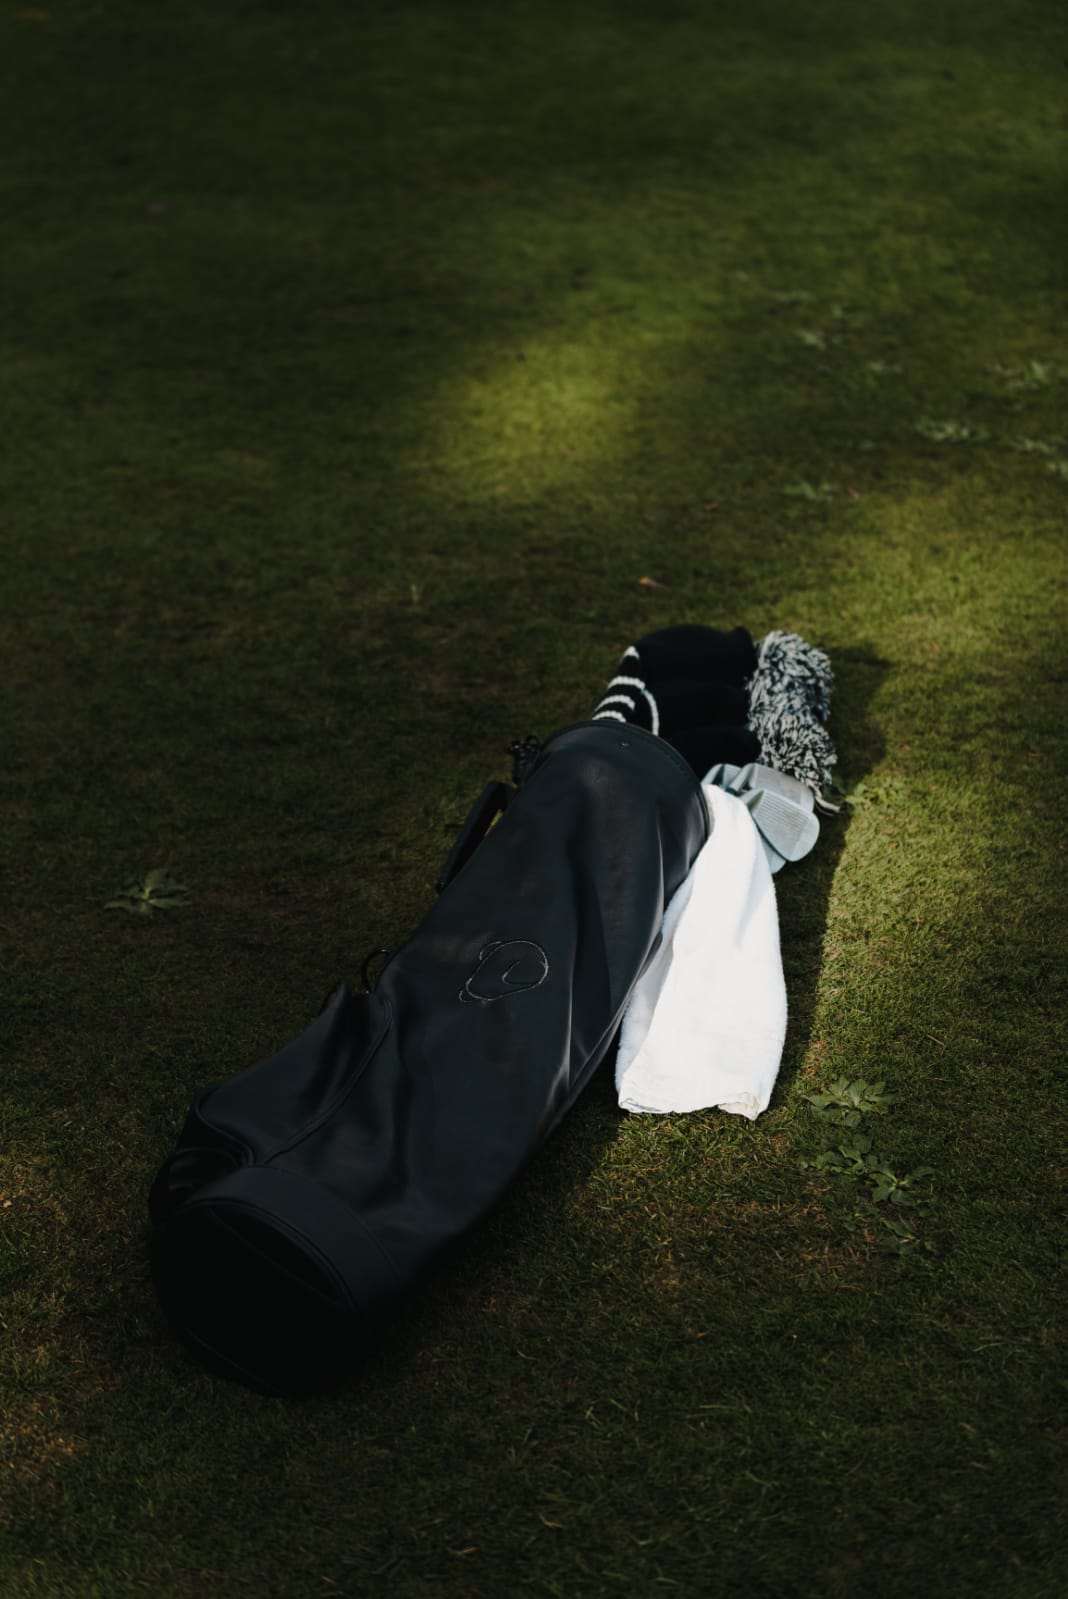 Leather Golf Bag - Black/Black